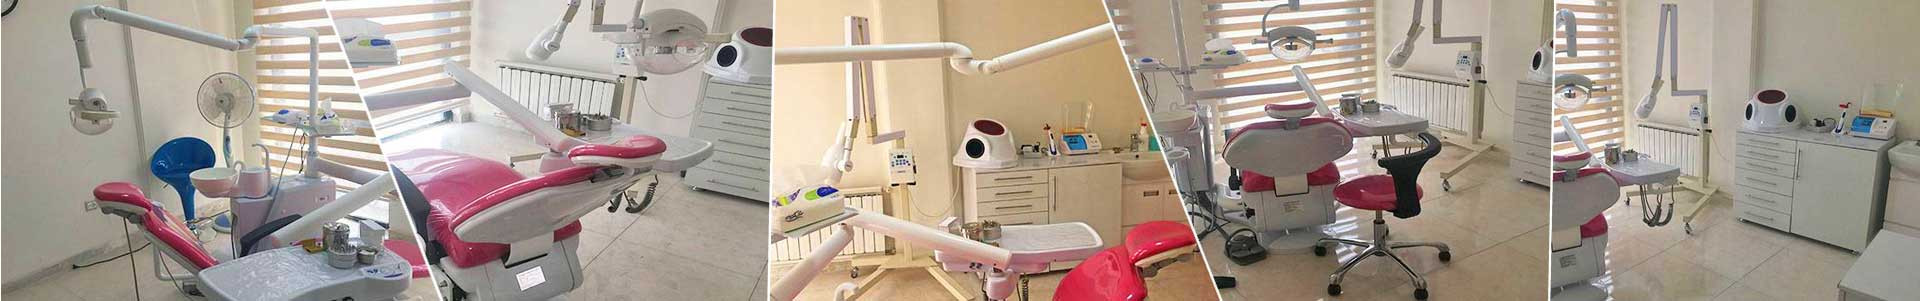 بهترین خرید کلینیک دندانپزشکی دکتر تراشی تهران با بیشترین درصد تخفیف در قیمت - 41%